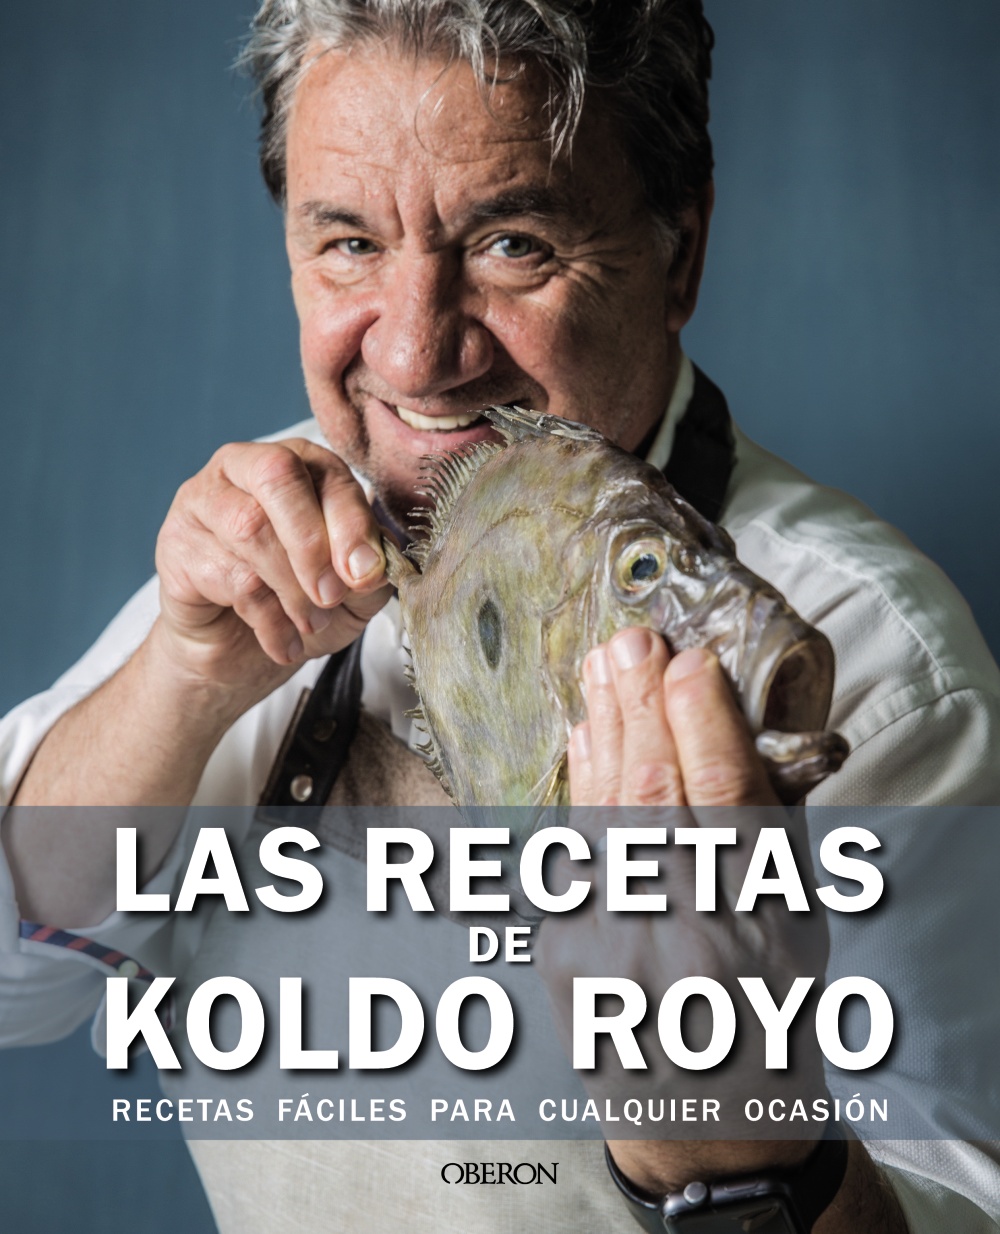 Las recetas de Koldo Royo - Koldo  Royo 